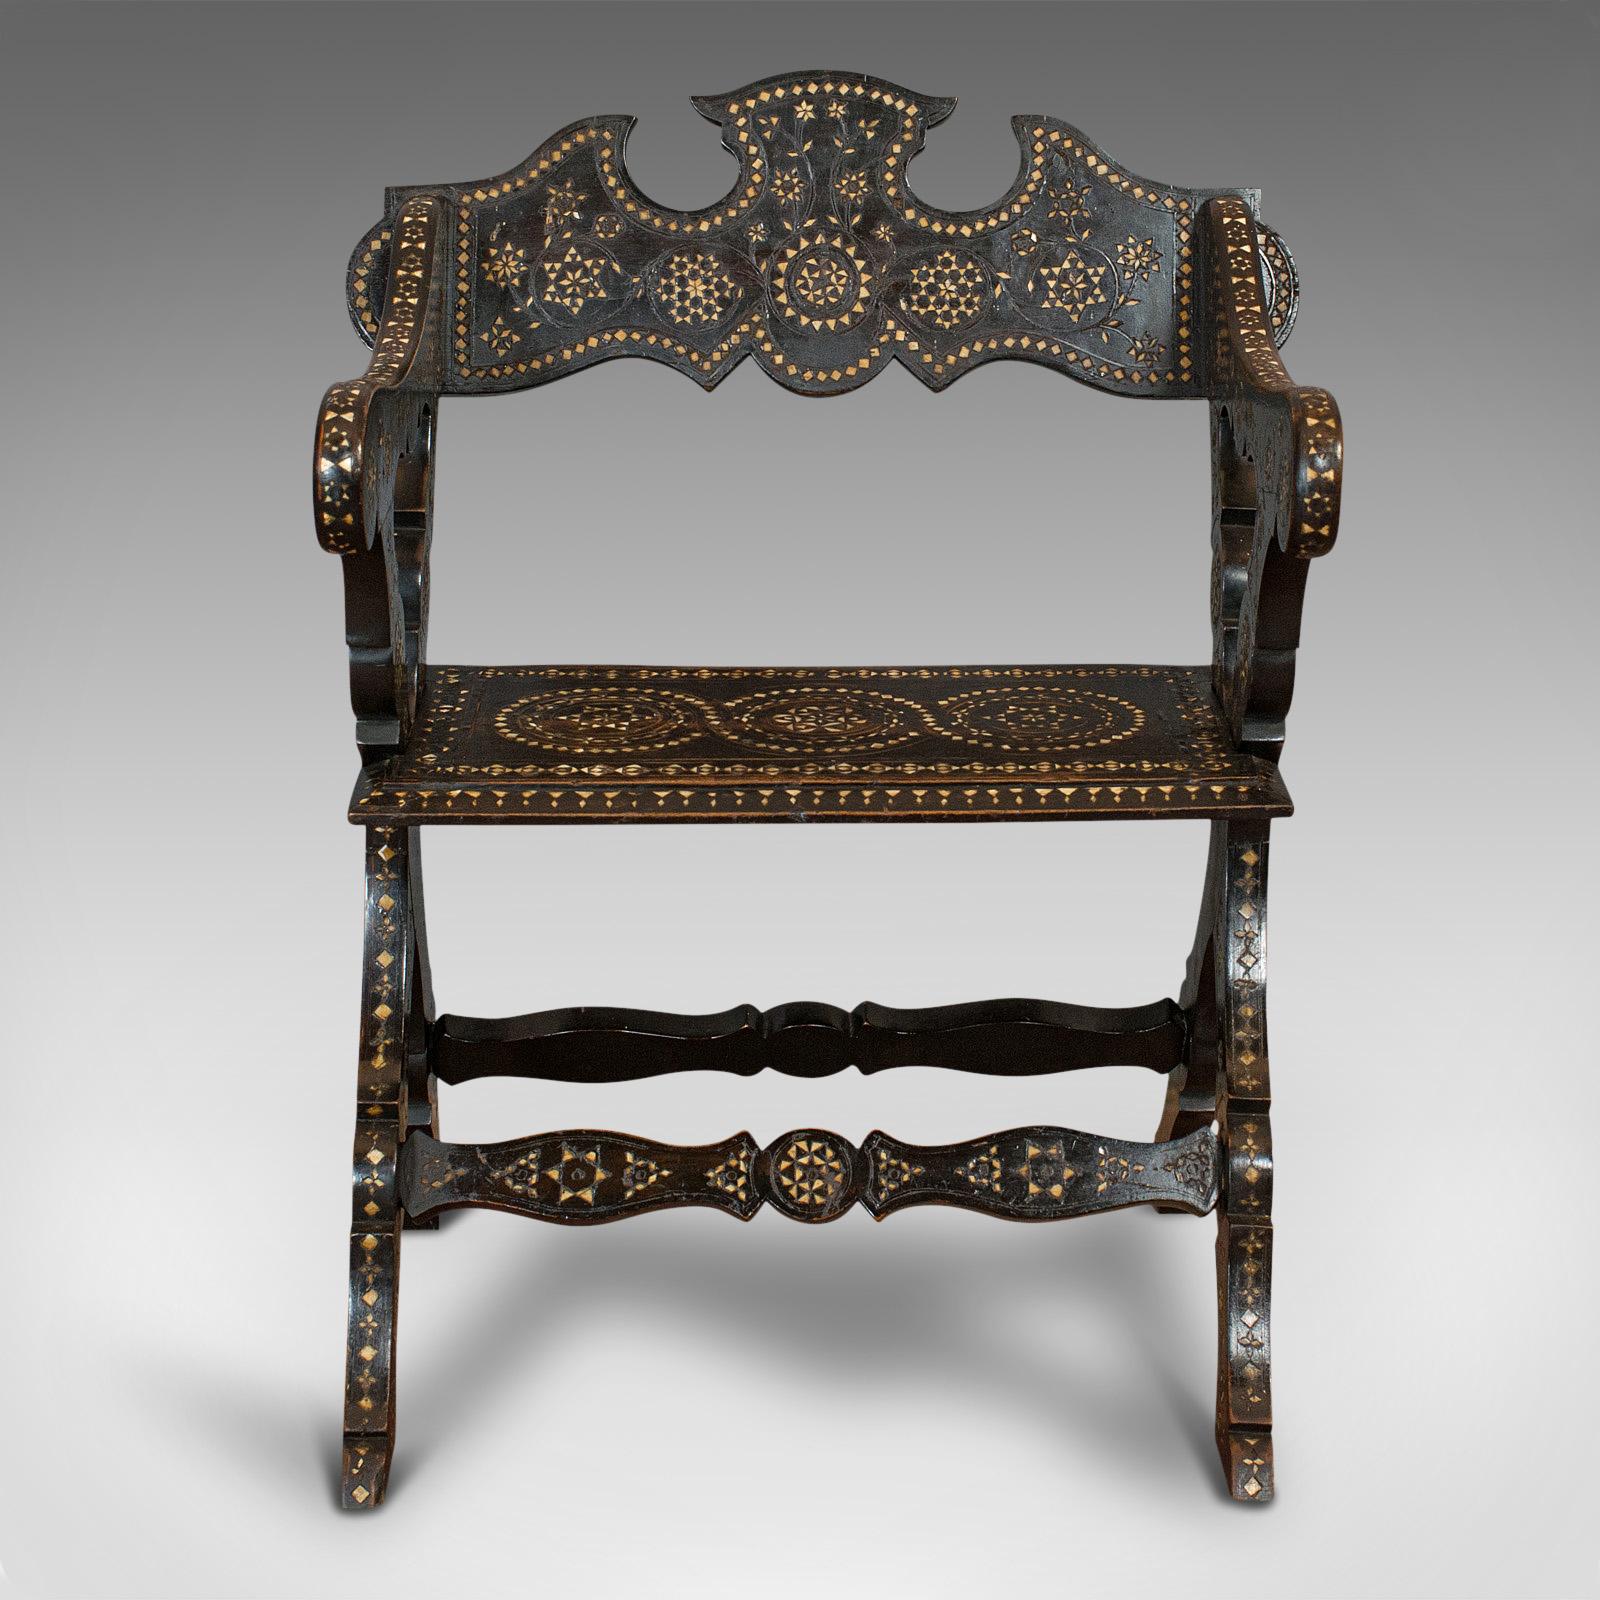 Dies ist ein antiker Stuhl mit X-Gestell. Ein orientalischer Sitz aus ebonisiertem Mahagoni mit aufwändiger Knocheneinlage, datiert auf die Mitte des 19. Jahrhunderts, um 1850.

Außergewöhnliche Dekoration und Form
Zeigt eine wünschenswerte